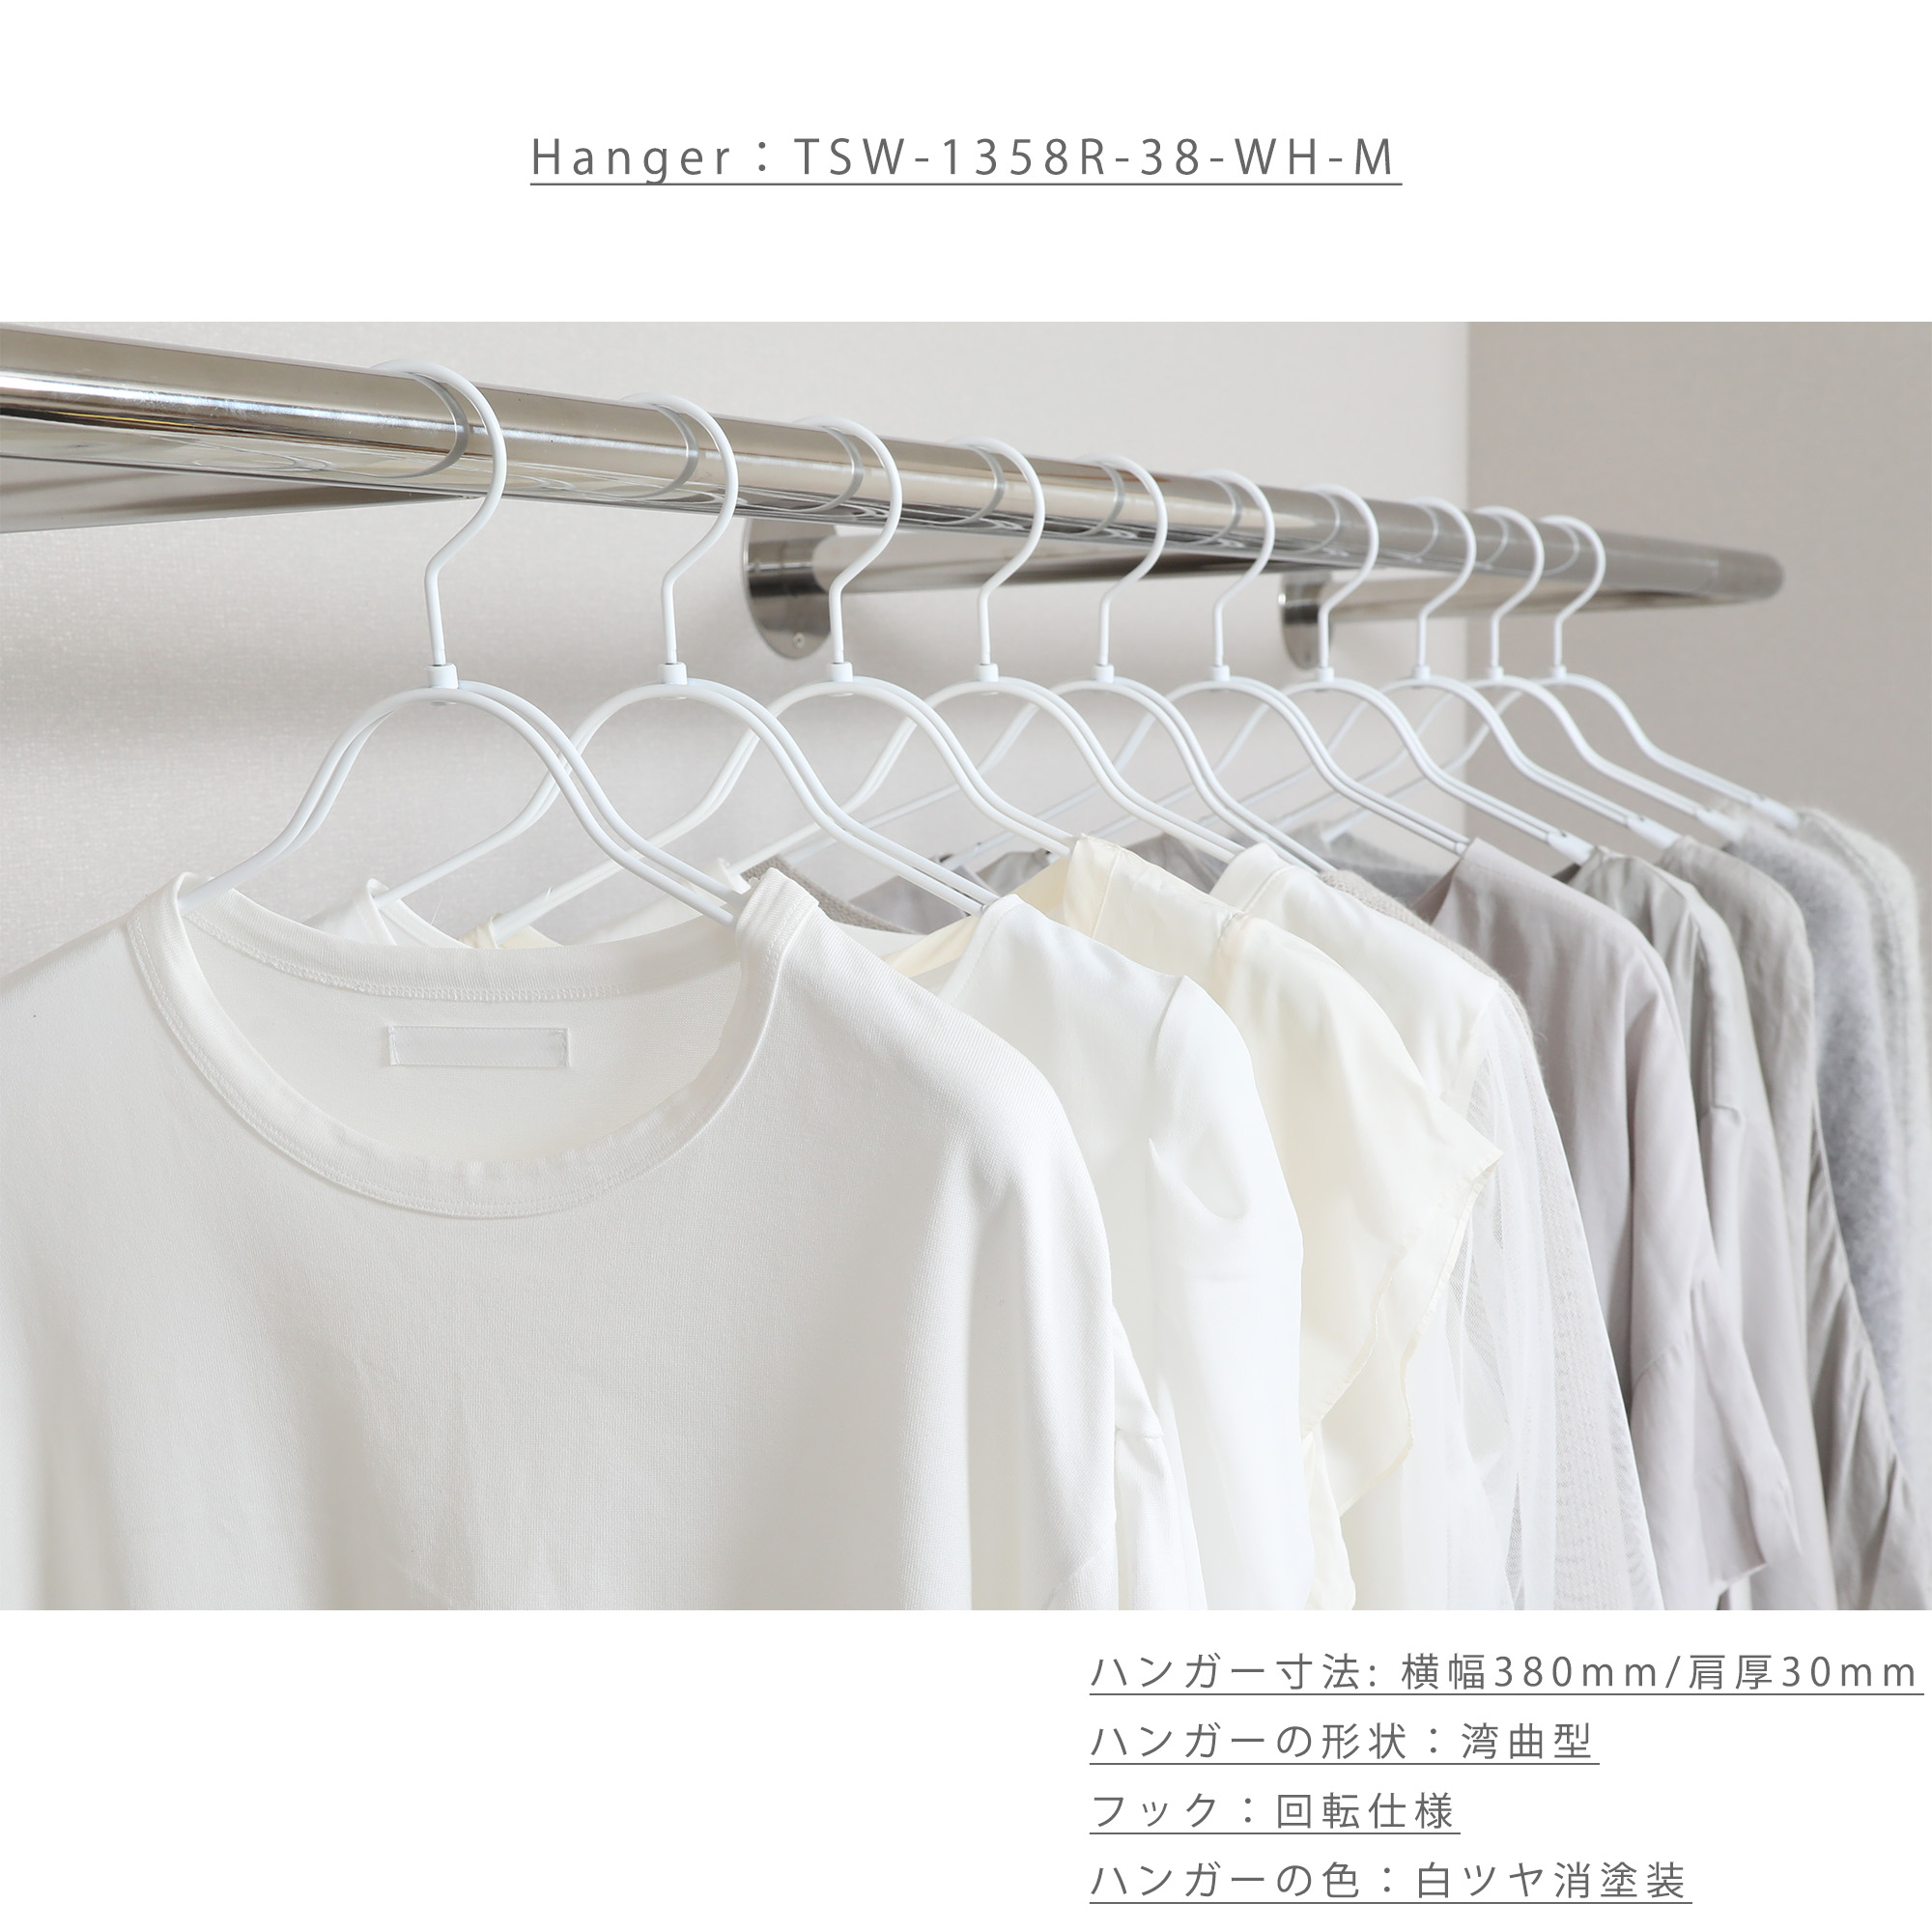 ハンガー使用イメージ画像 09

●型番：TSW-1358R-38-GO
●カラー：白ツヤ消塗装仕上
●生産国：日本（タヤ自社工場）